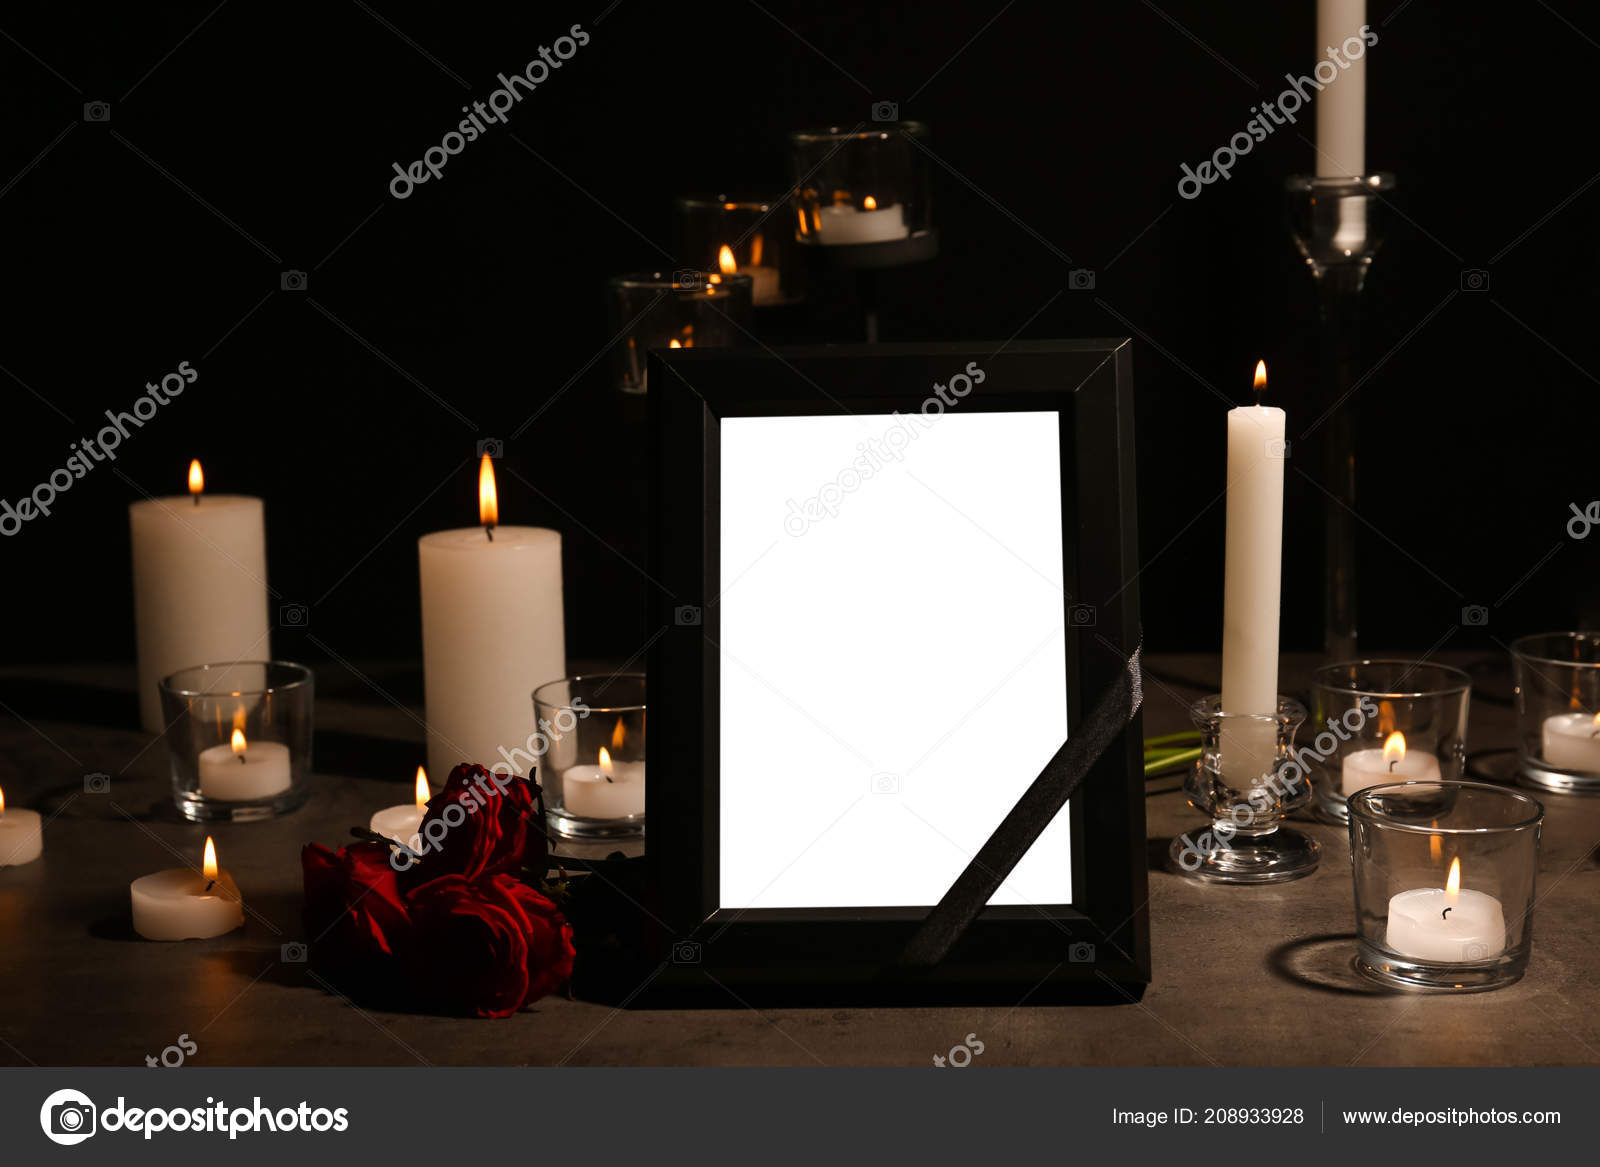 Похоронная рамка со свечами